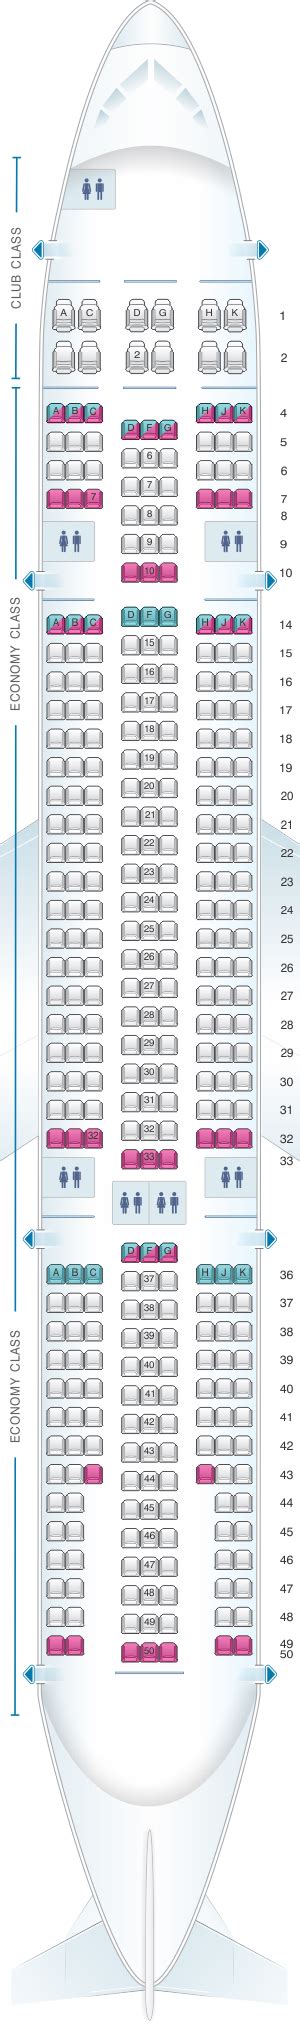 Seat Map Air Transat Airbus A330 200 345pax Seatmaestro